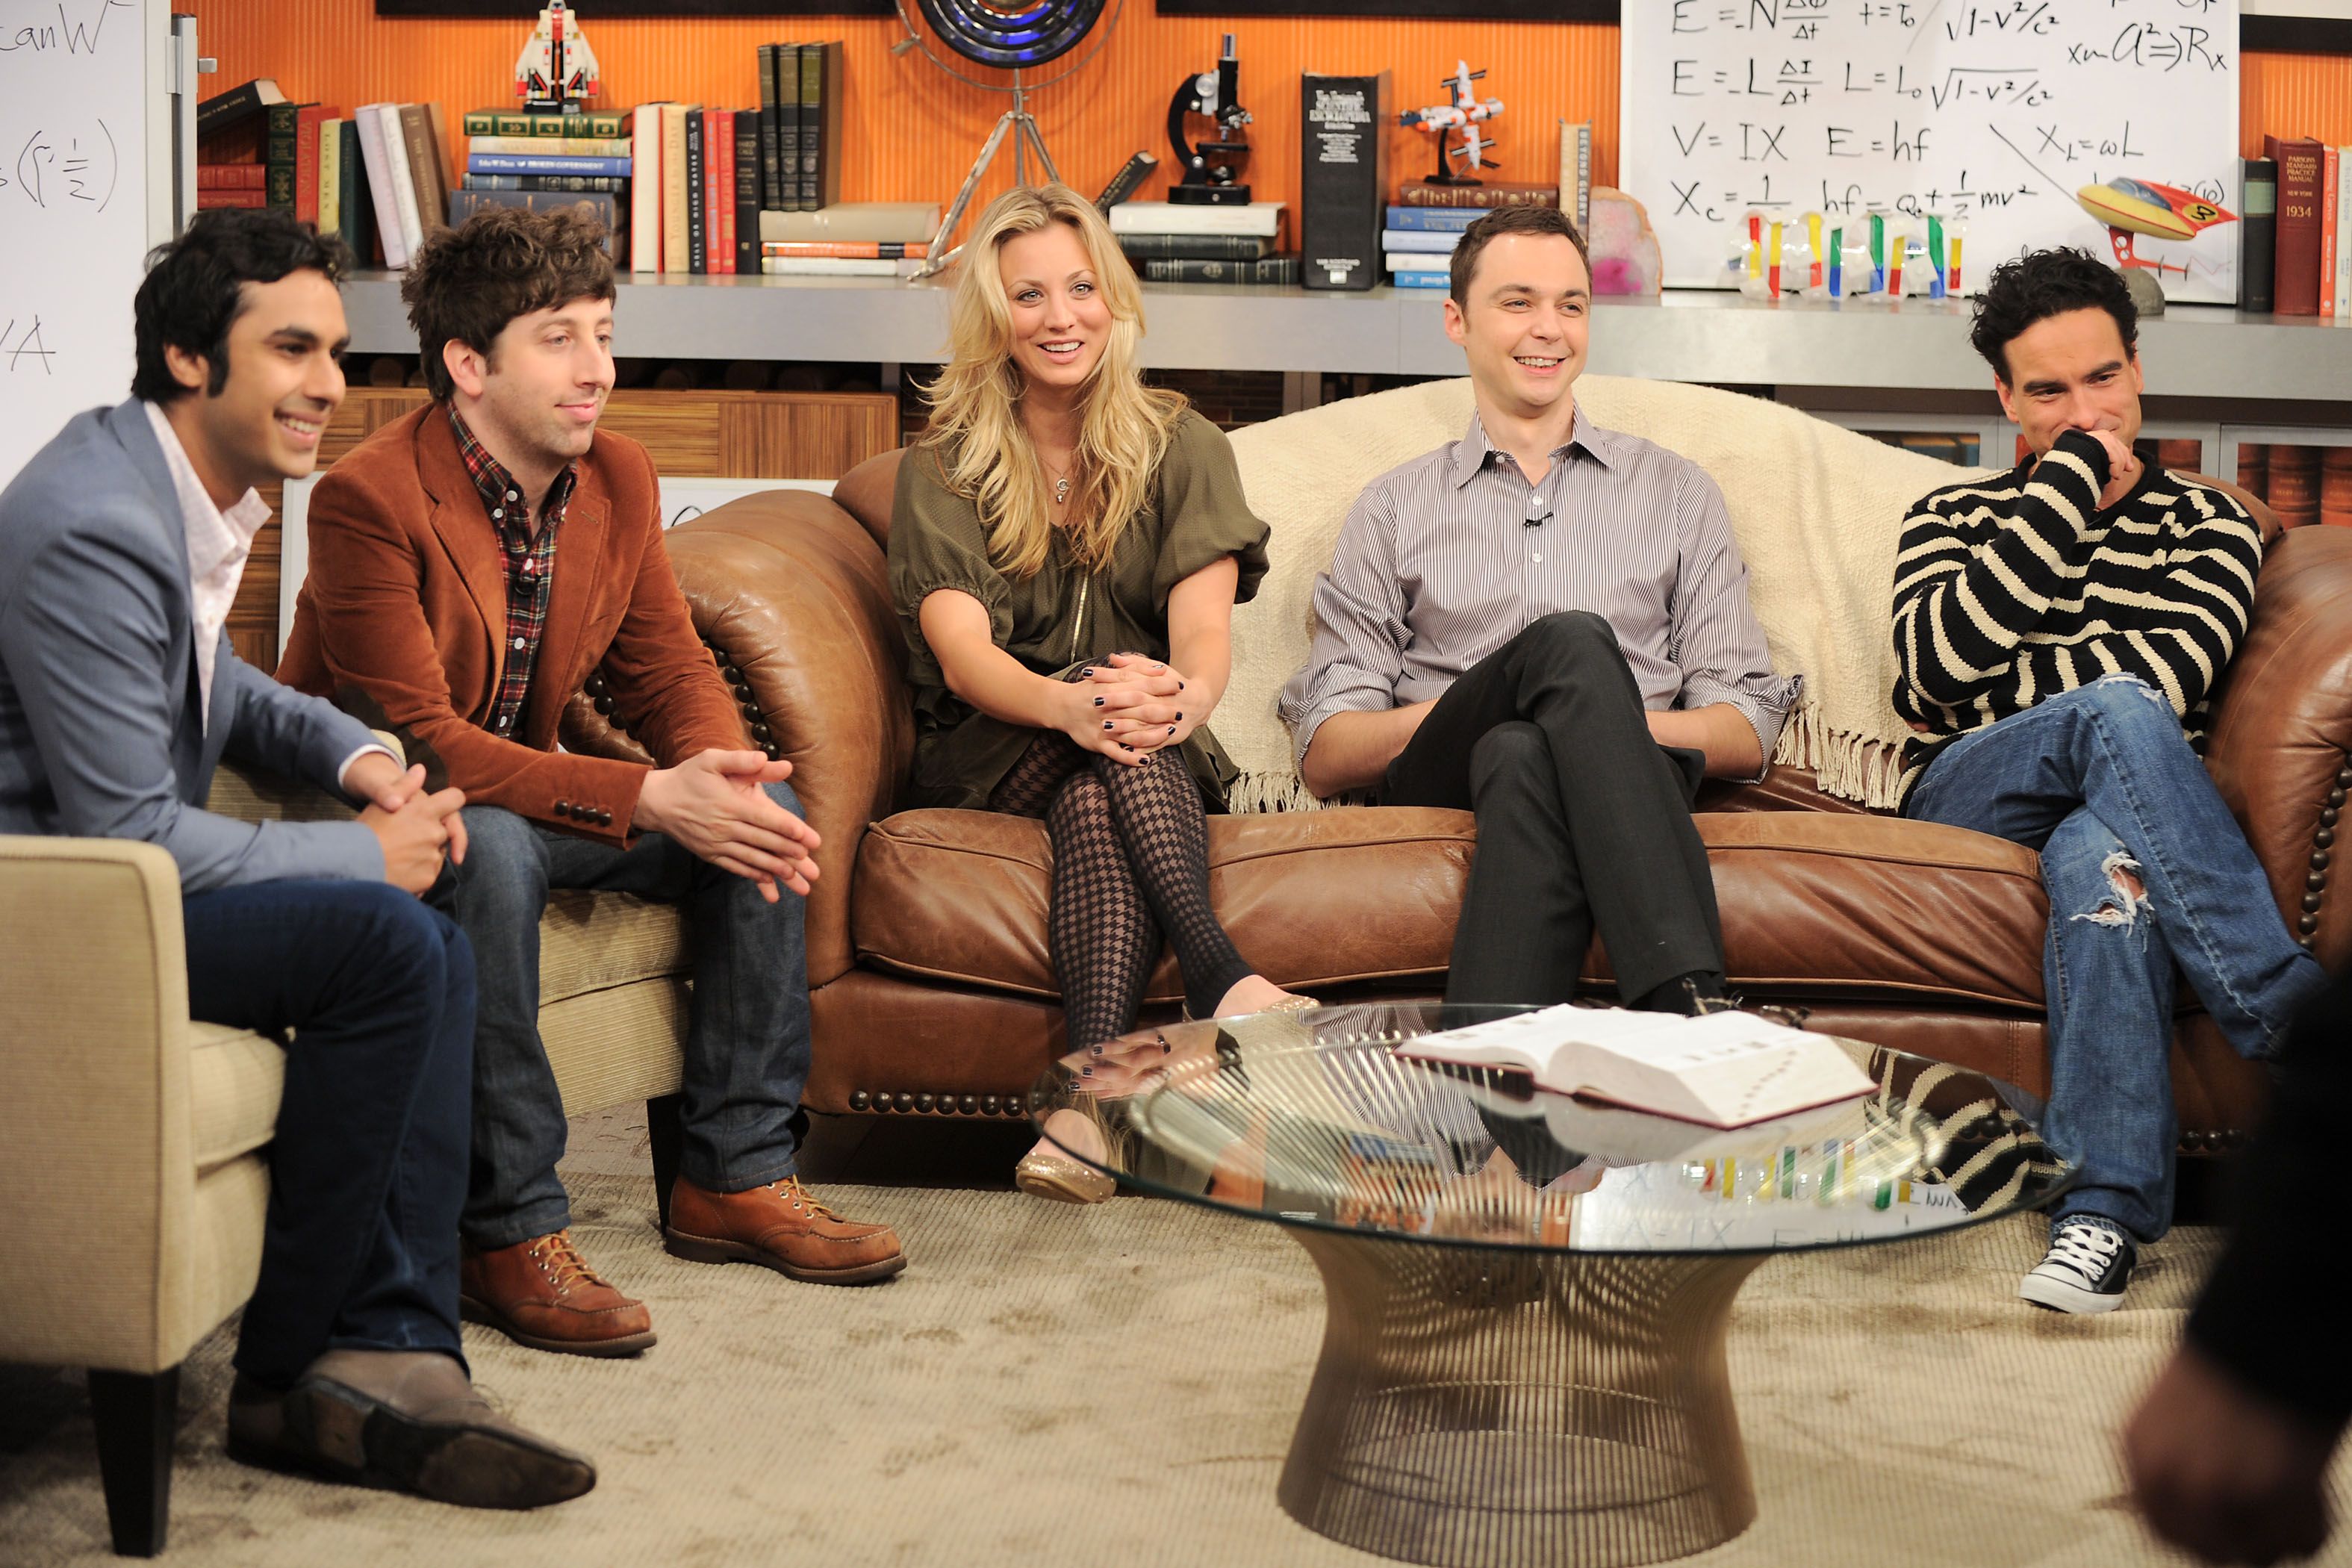 Uma sitcom copiou descaradamente a The Big Bang Theory e quase resultou em um processo caro